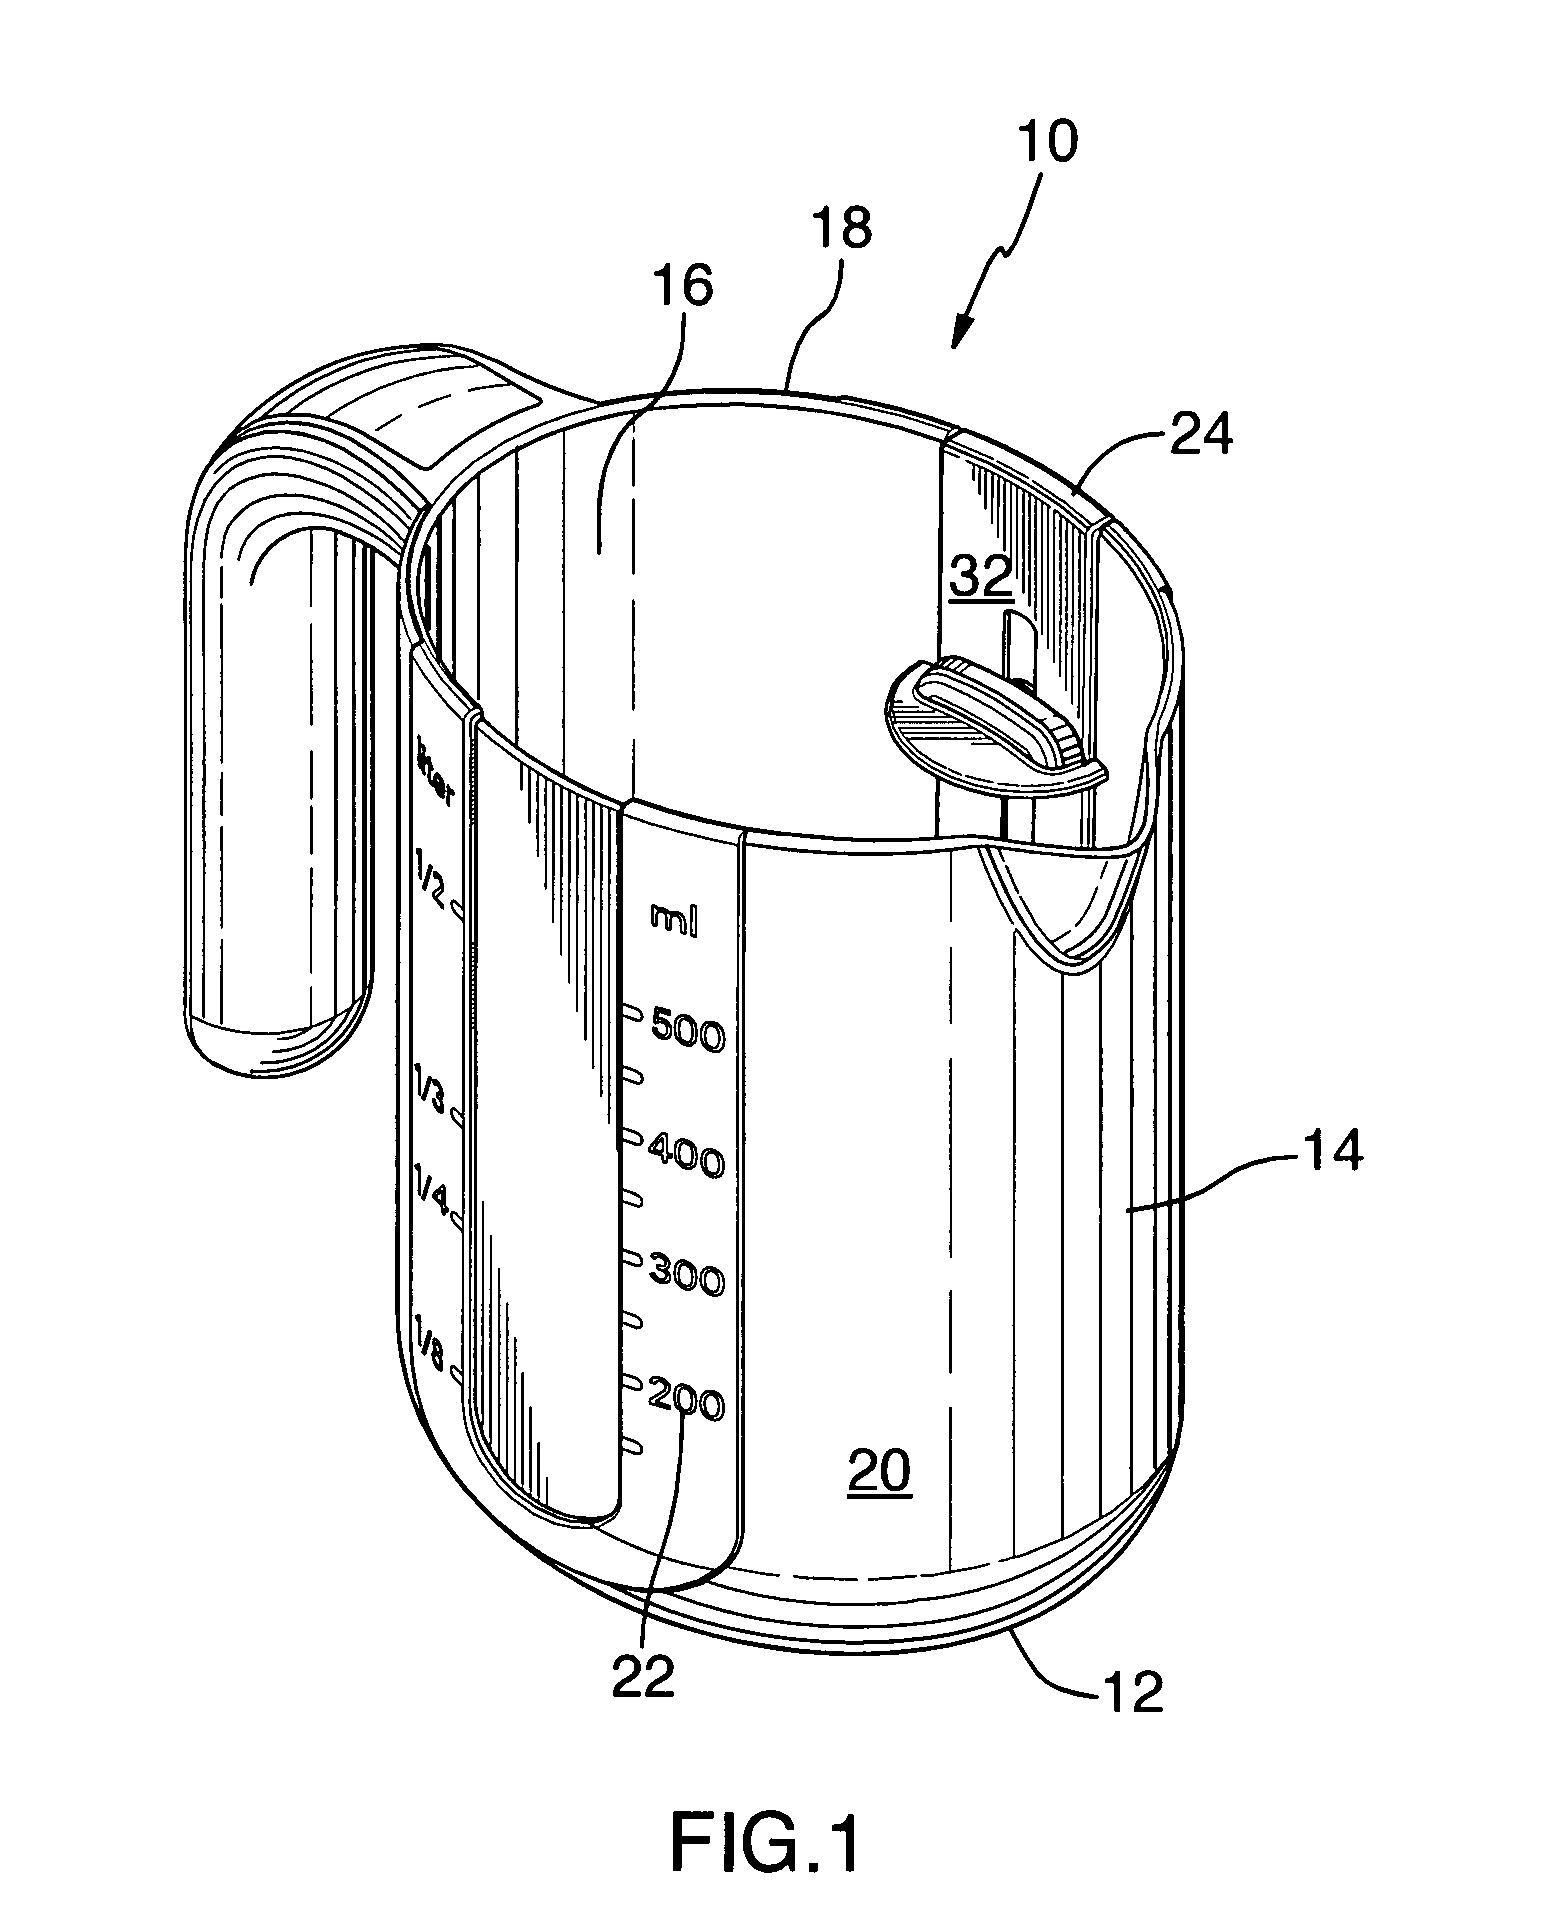 Liquid measuring vessel